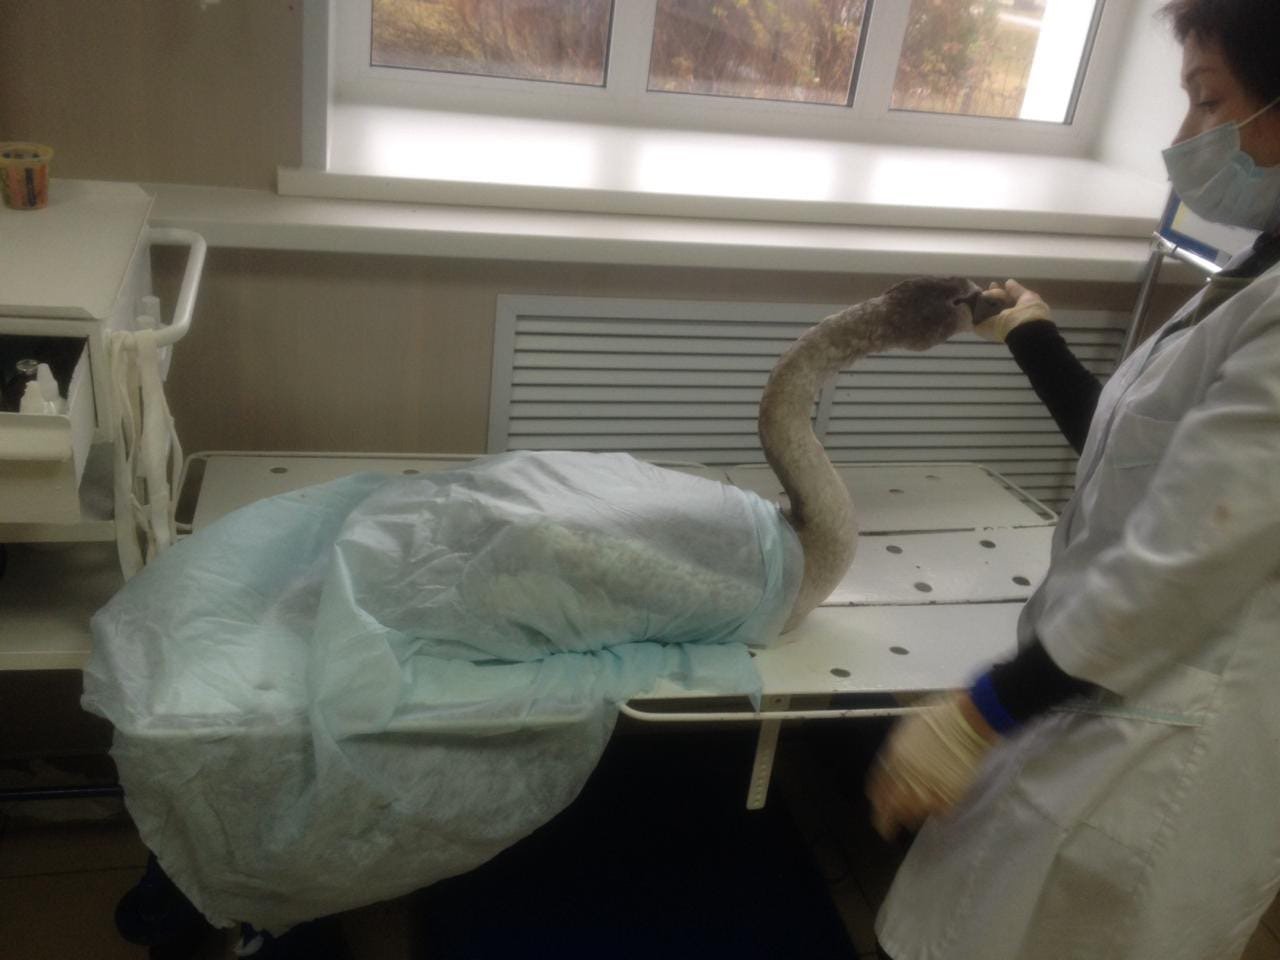 

Раненого лебедя с замерзающего пруда в Удмуртии передадут в зоопарк

